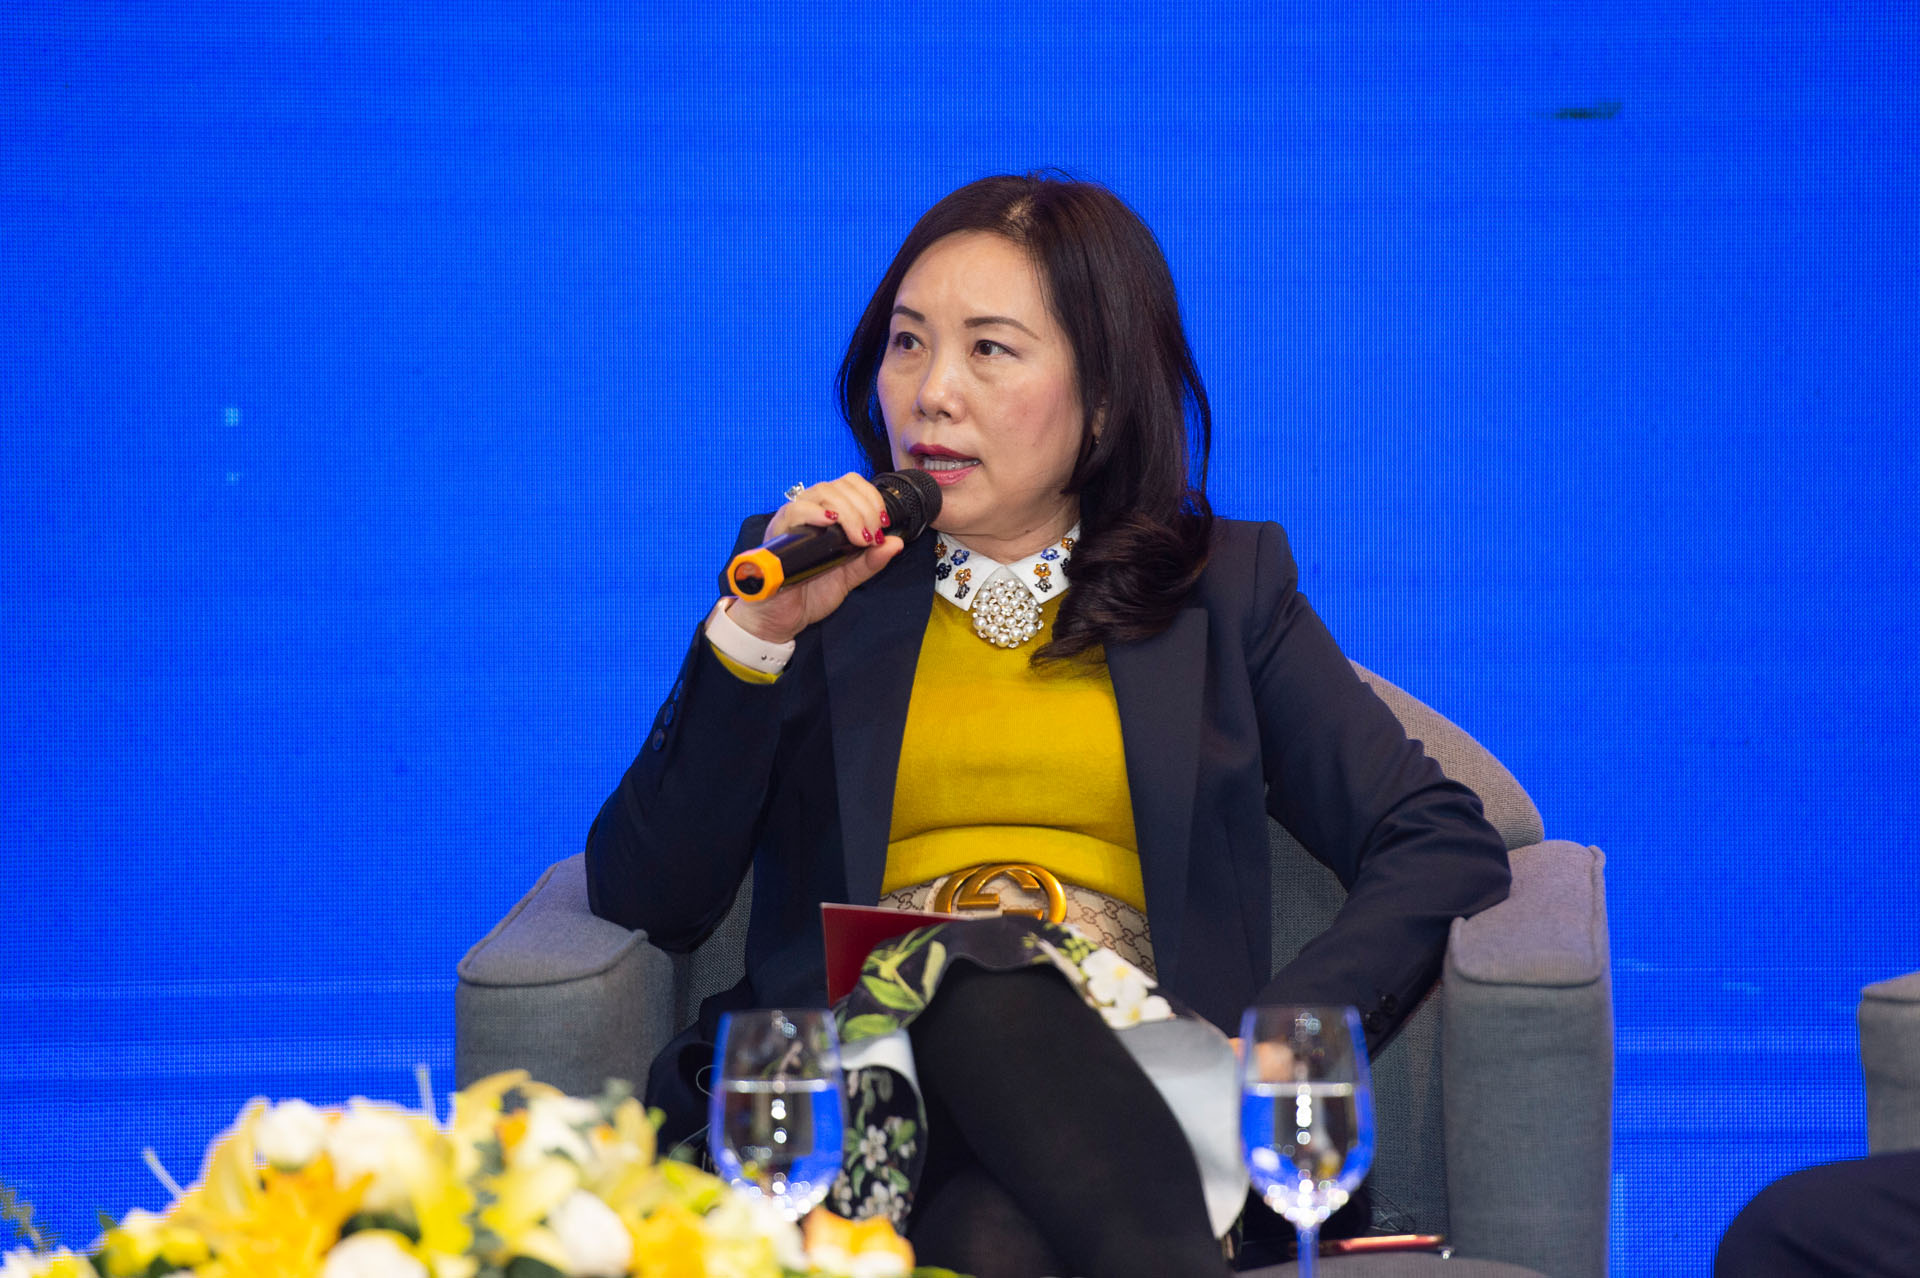 Bà Đỗ Thị Thúy Hương - Ủy viên Ban Chấp hành Hiệp hội Doanh nghiệp điện tử Việt Nam